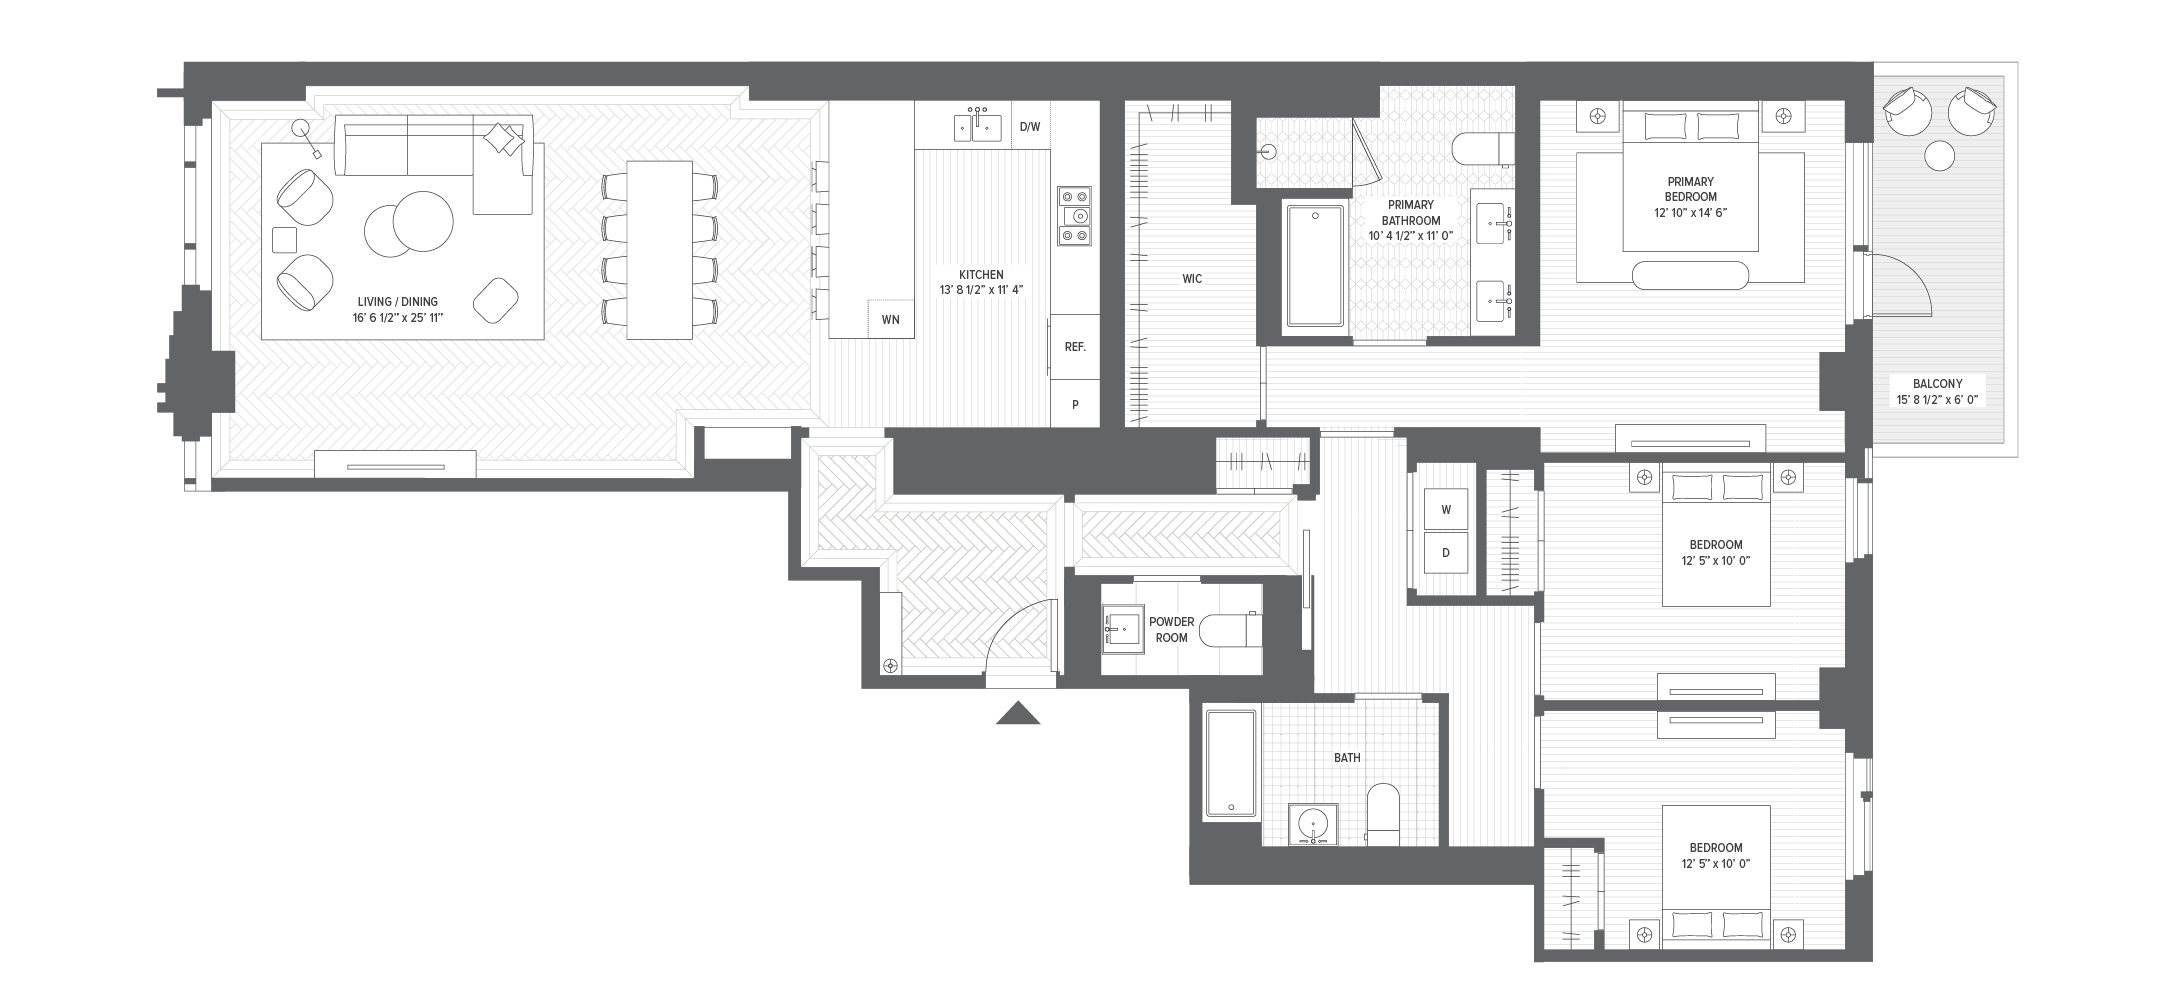 Unit 4B floorplan